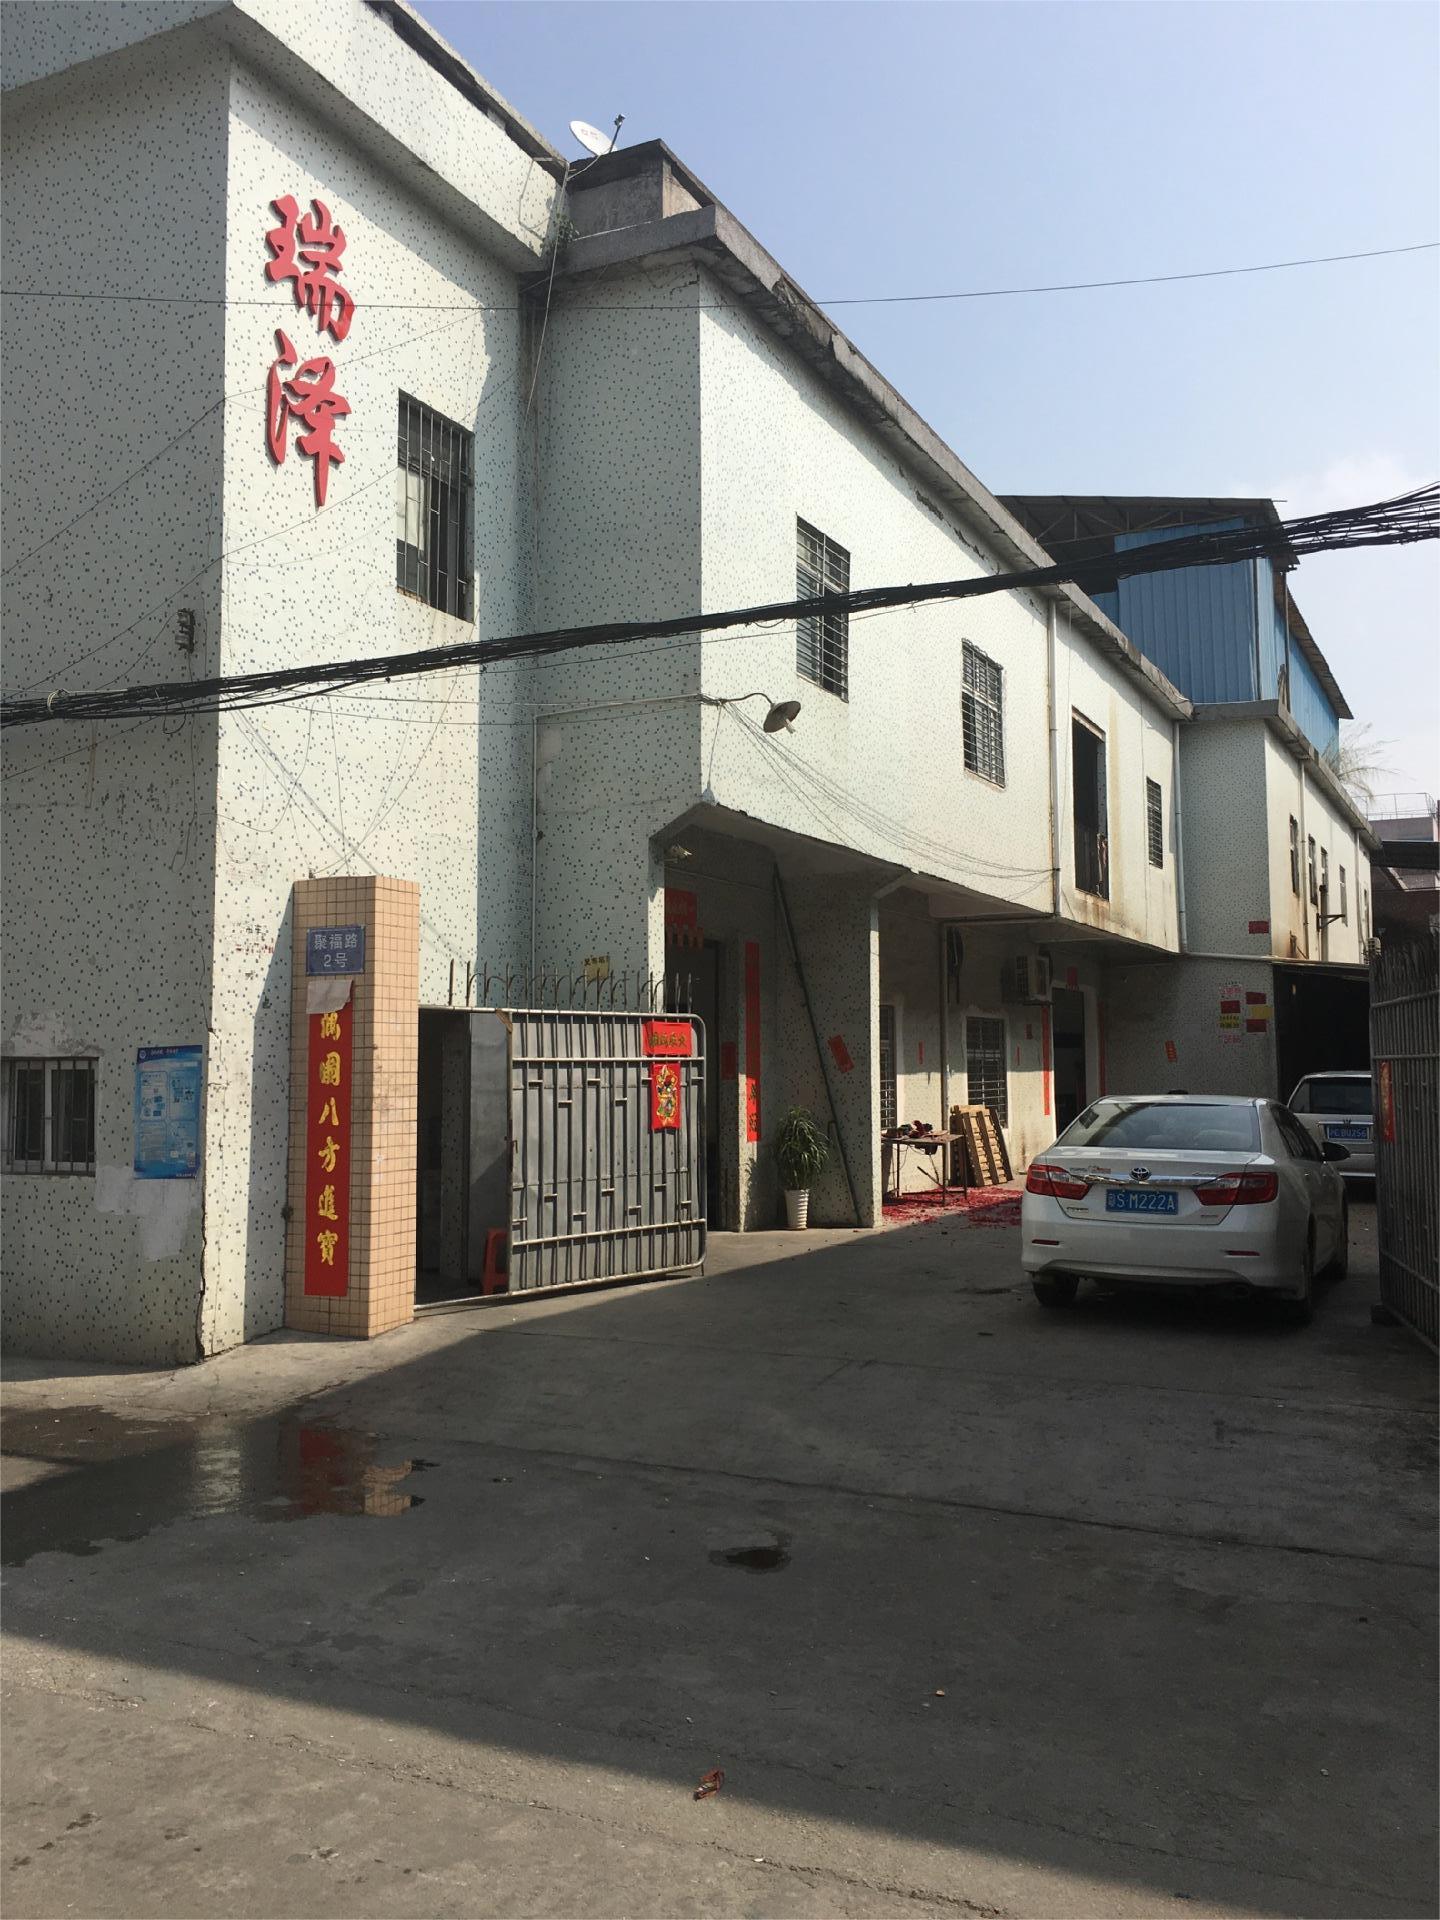   Dongguan Chang'an Ruize Electronic Equipment Factory